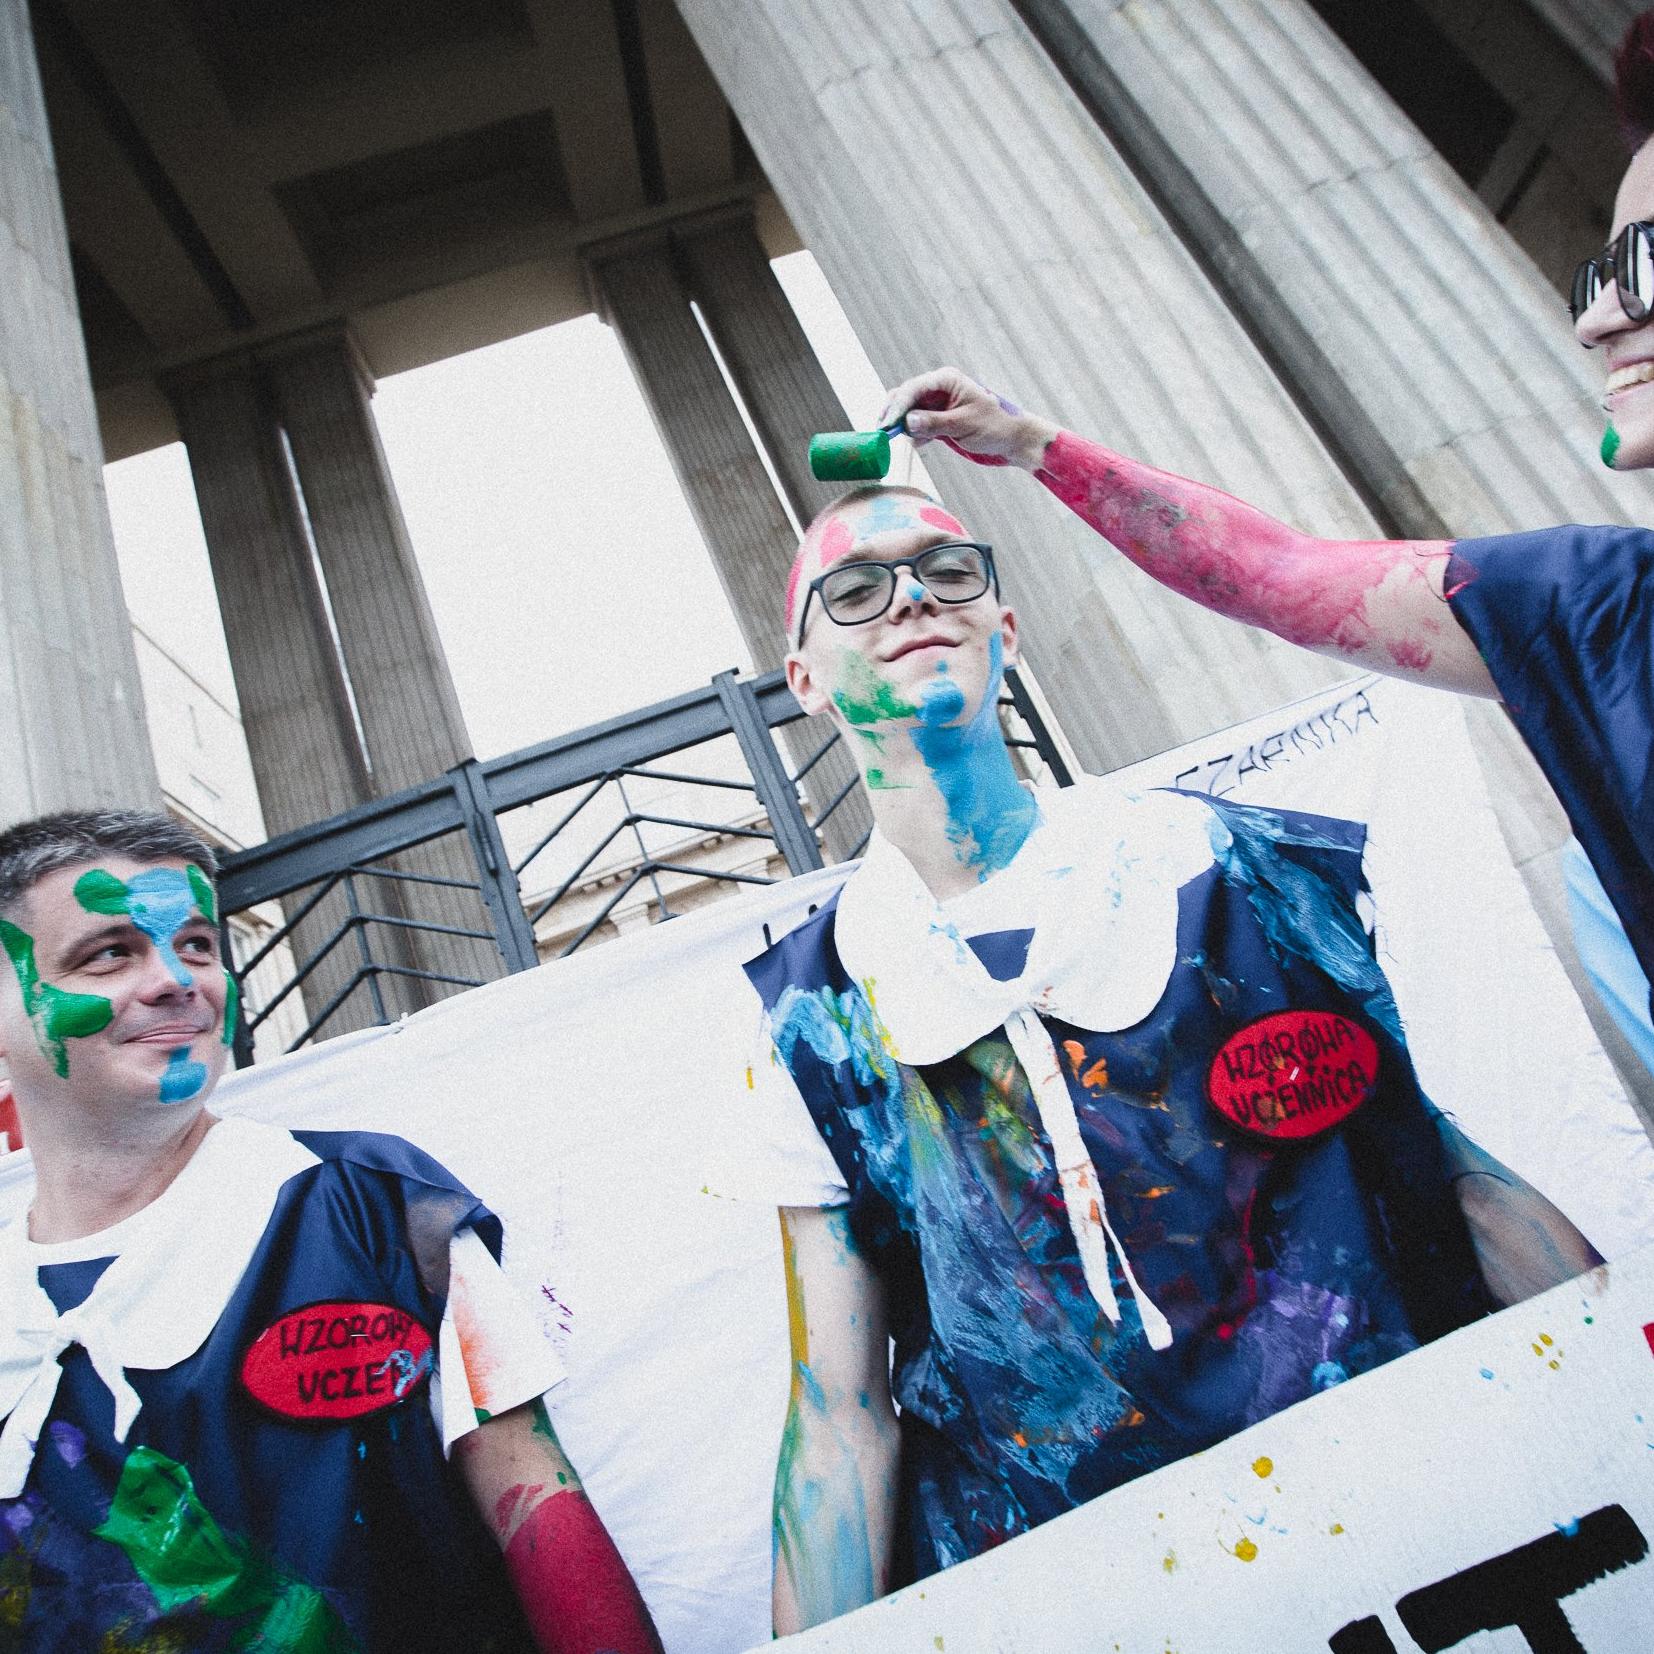 Warszawa, 19.07.2021. Aktywiści i aktywistki protestowali przed siedzibą Ministerwsta Edukacji i Nauki. Pomalowali się tęczowymi farbami, zrobili laurkę dla Czarnka